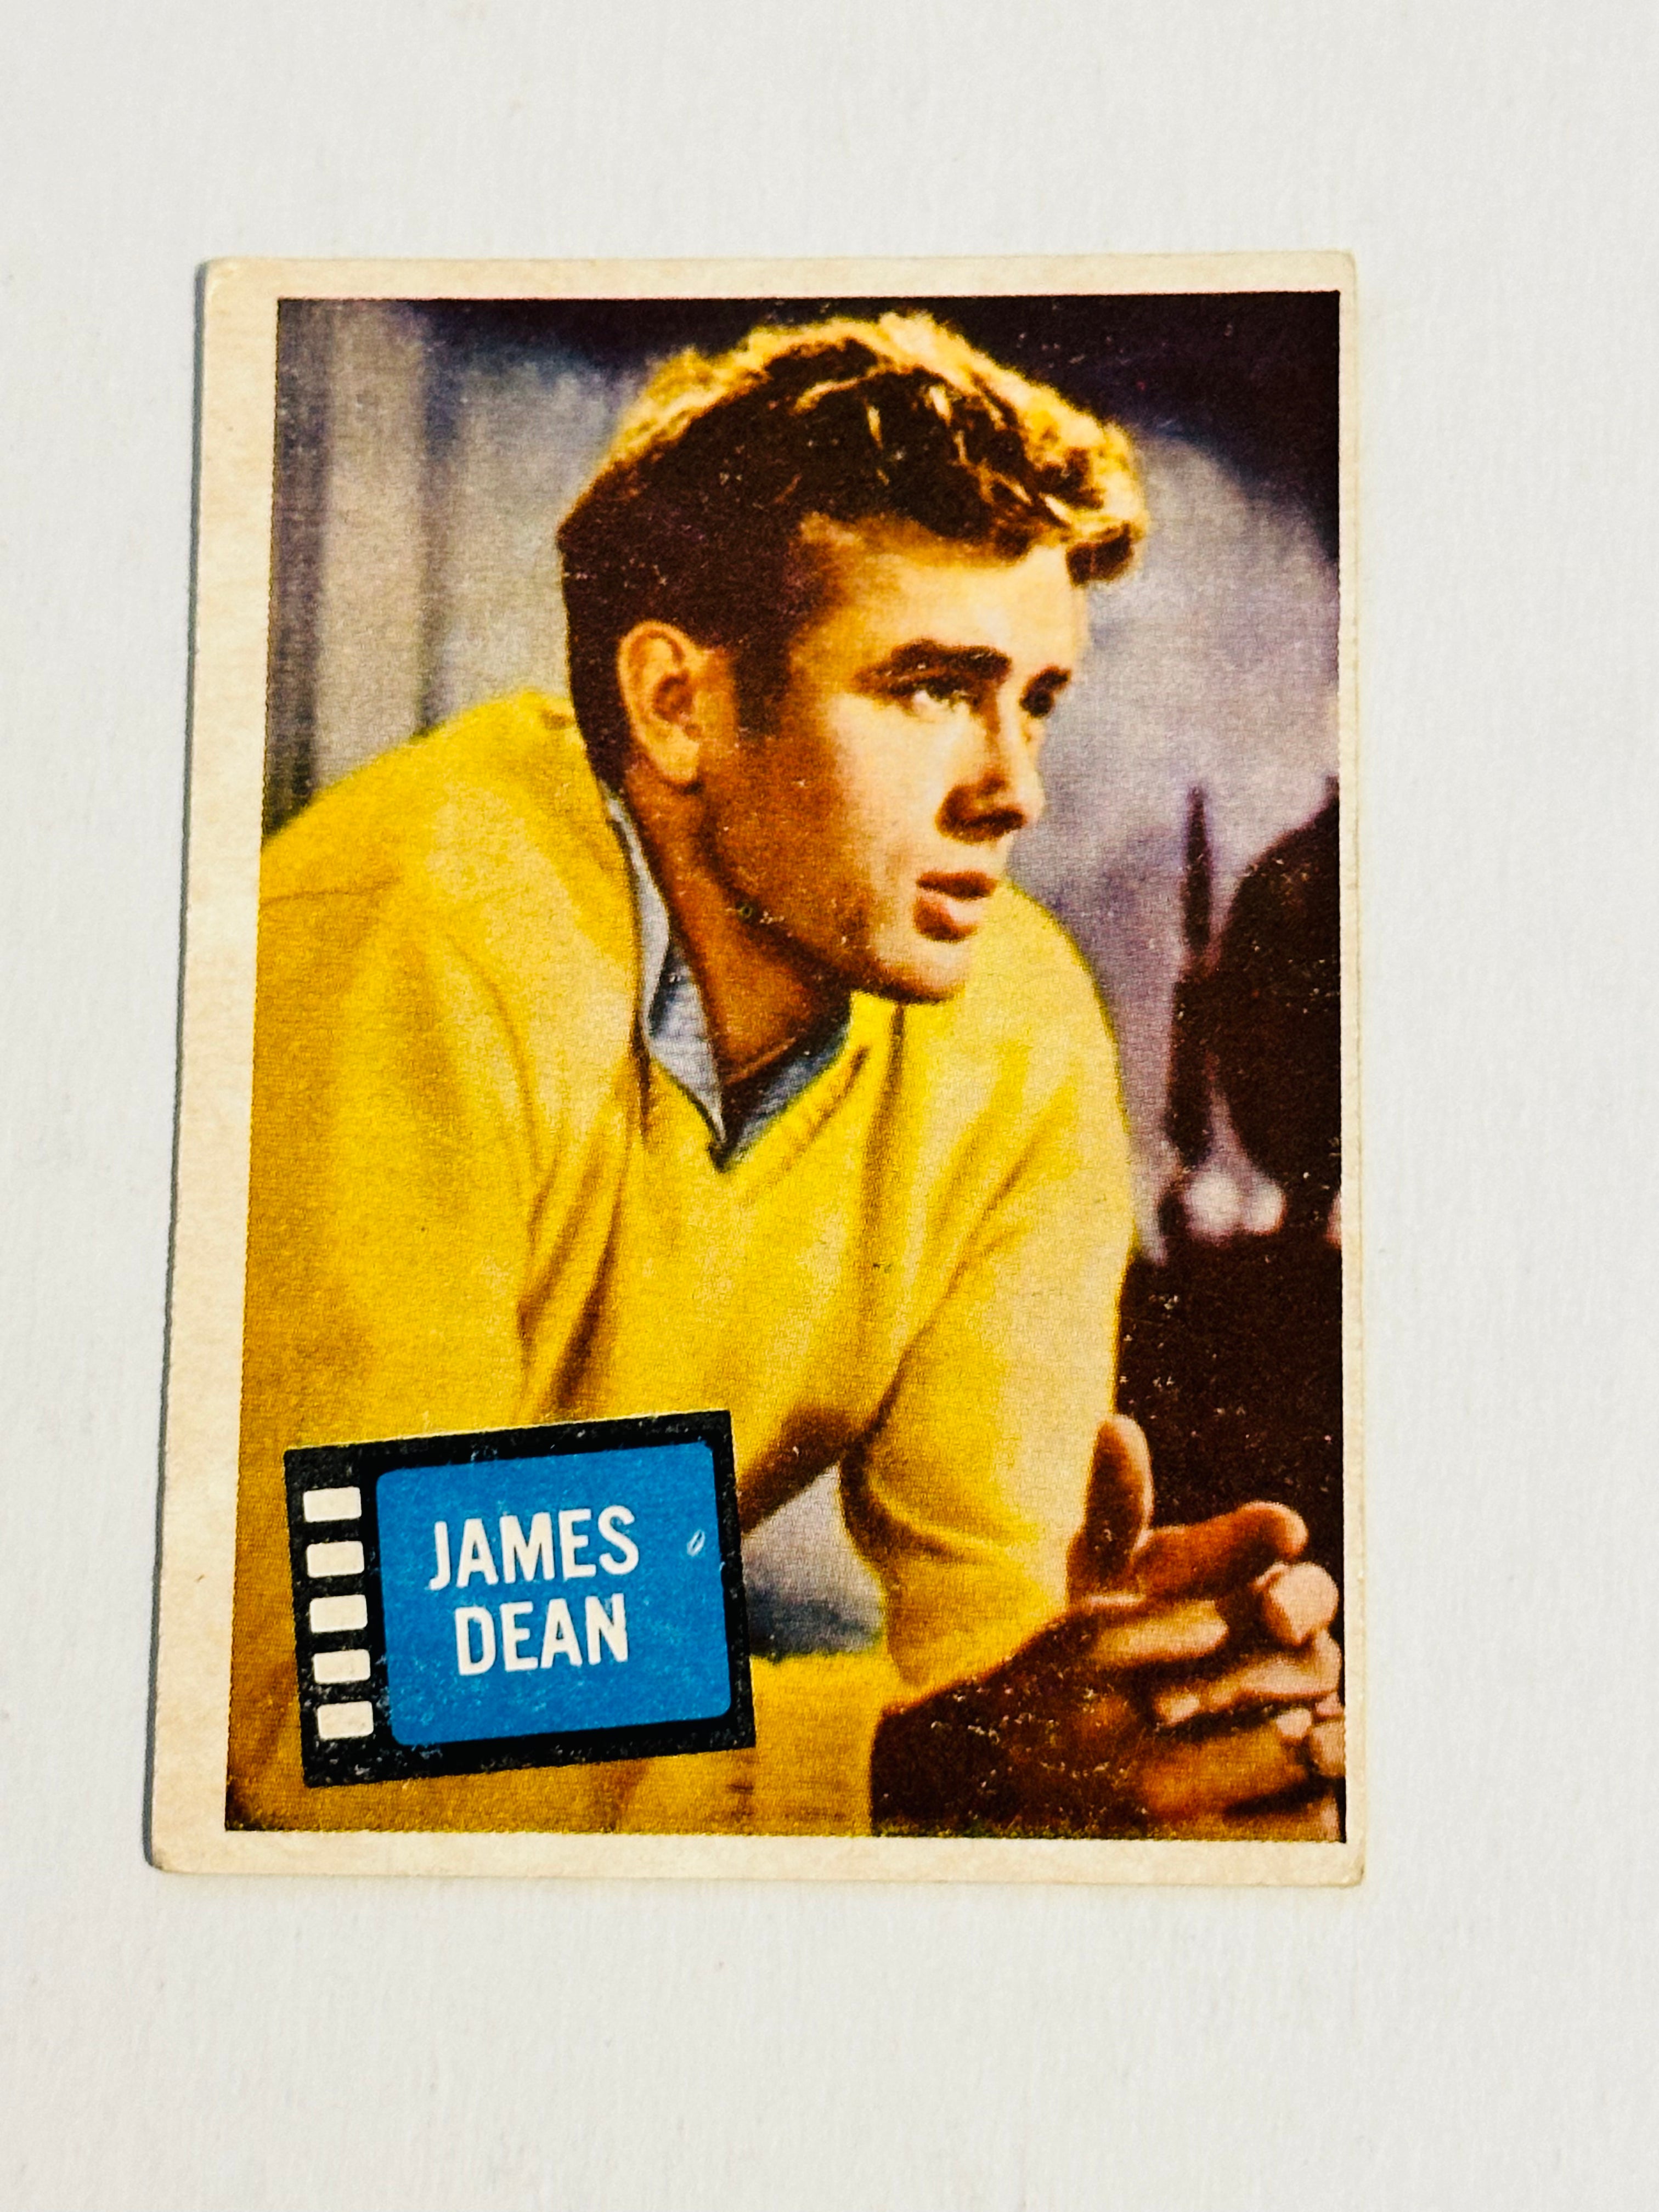 James Dean rare Hit Stars card 1957